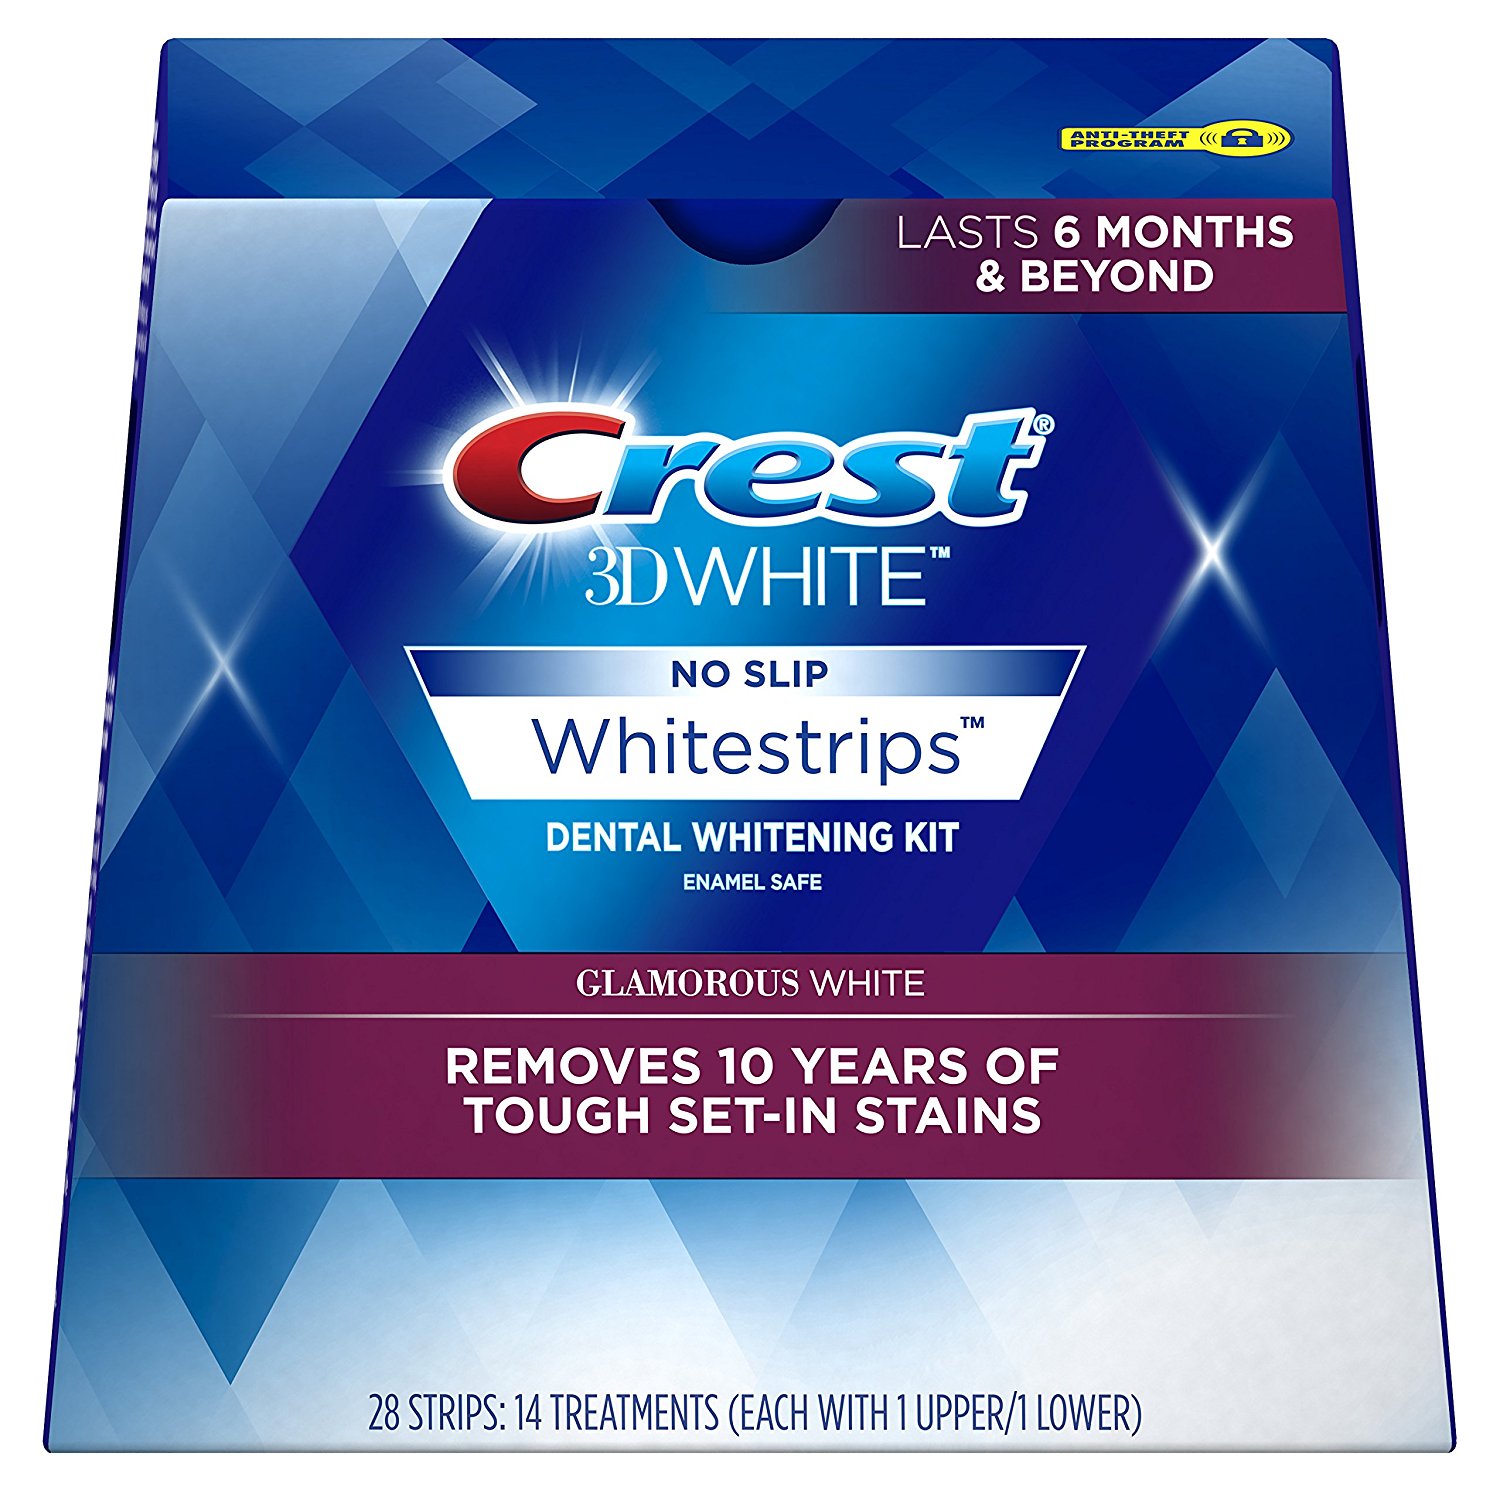 Crest 3dwhite Whitestrips glamorous